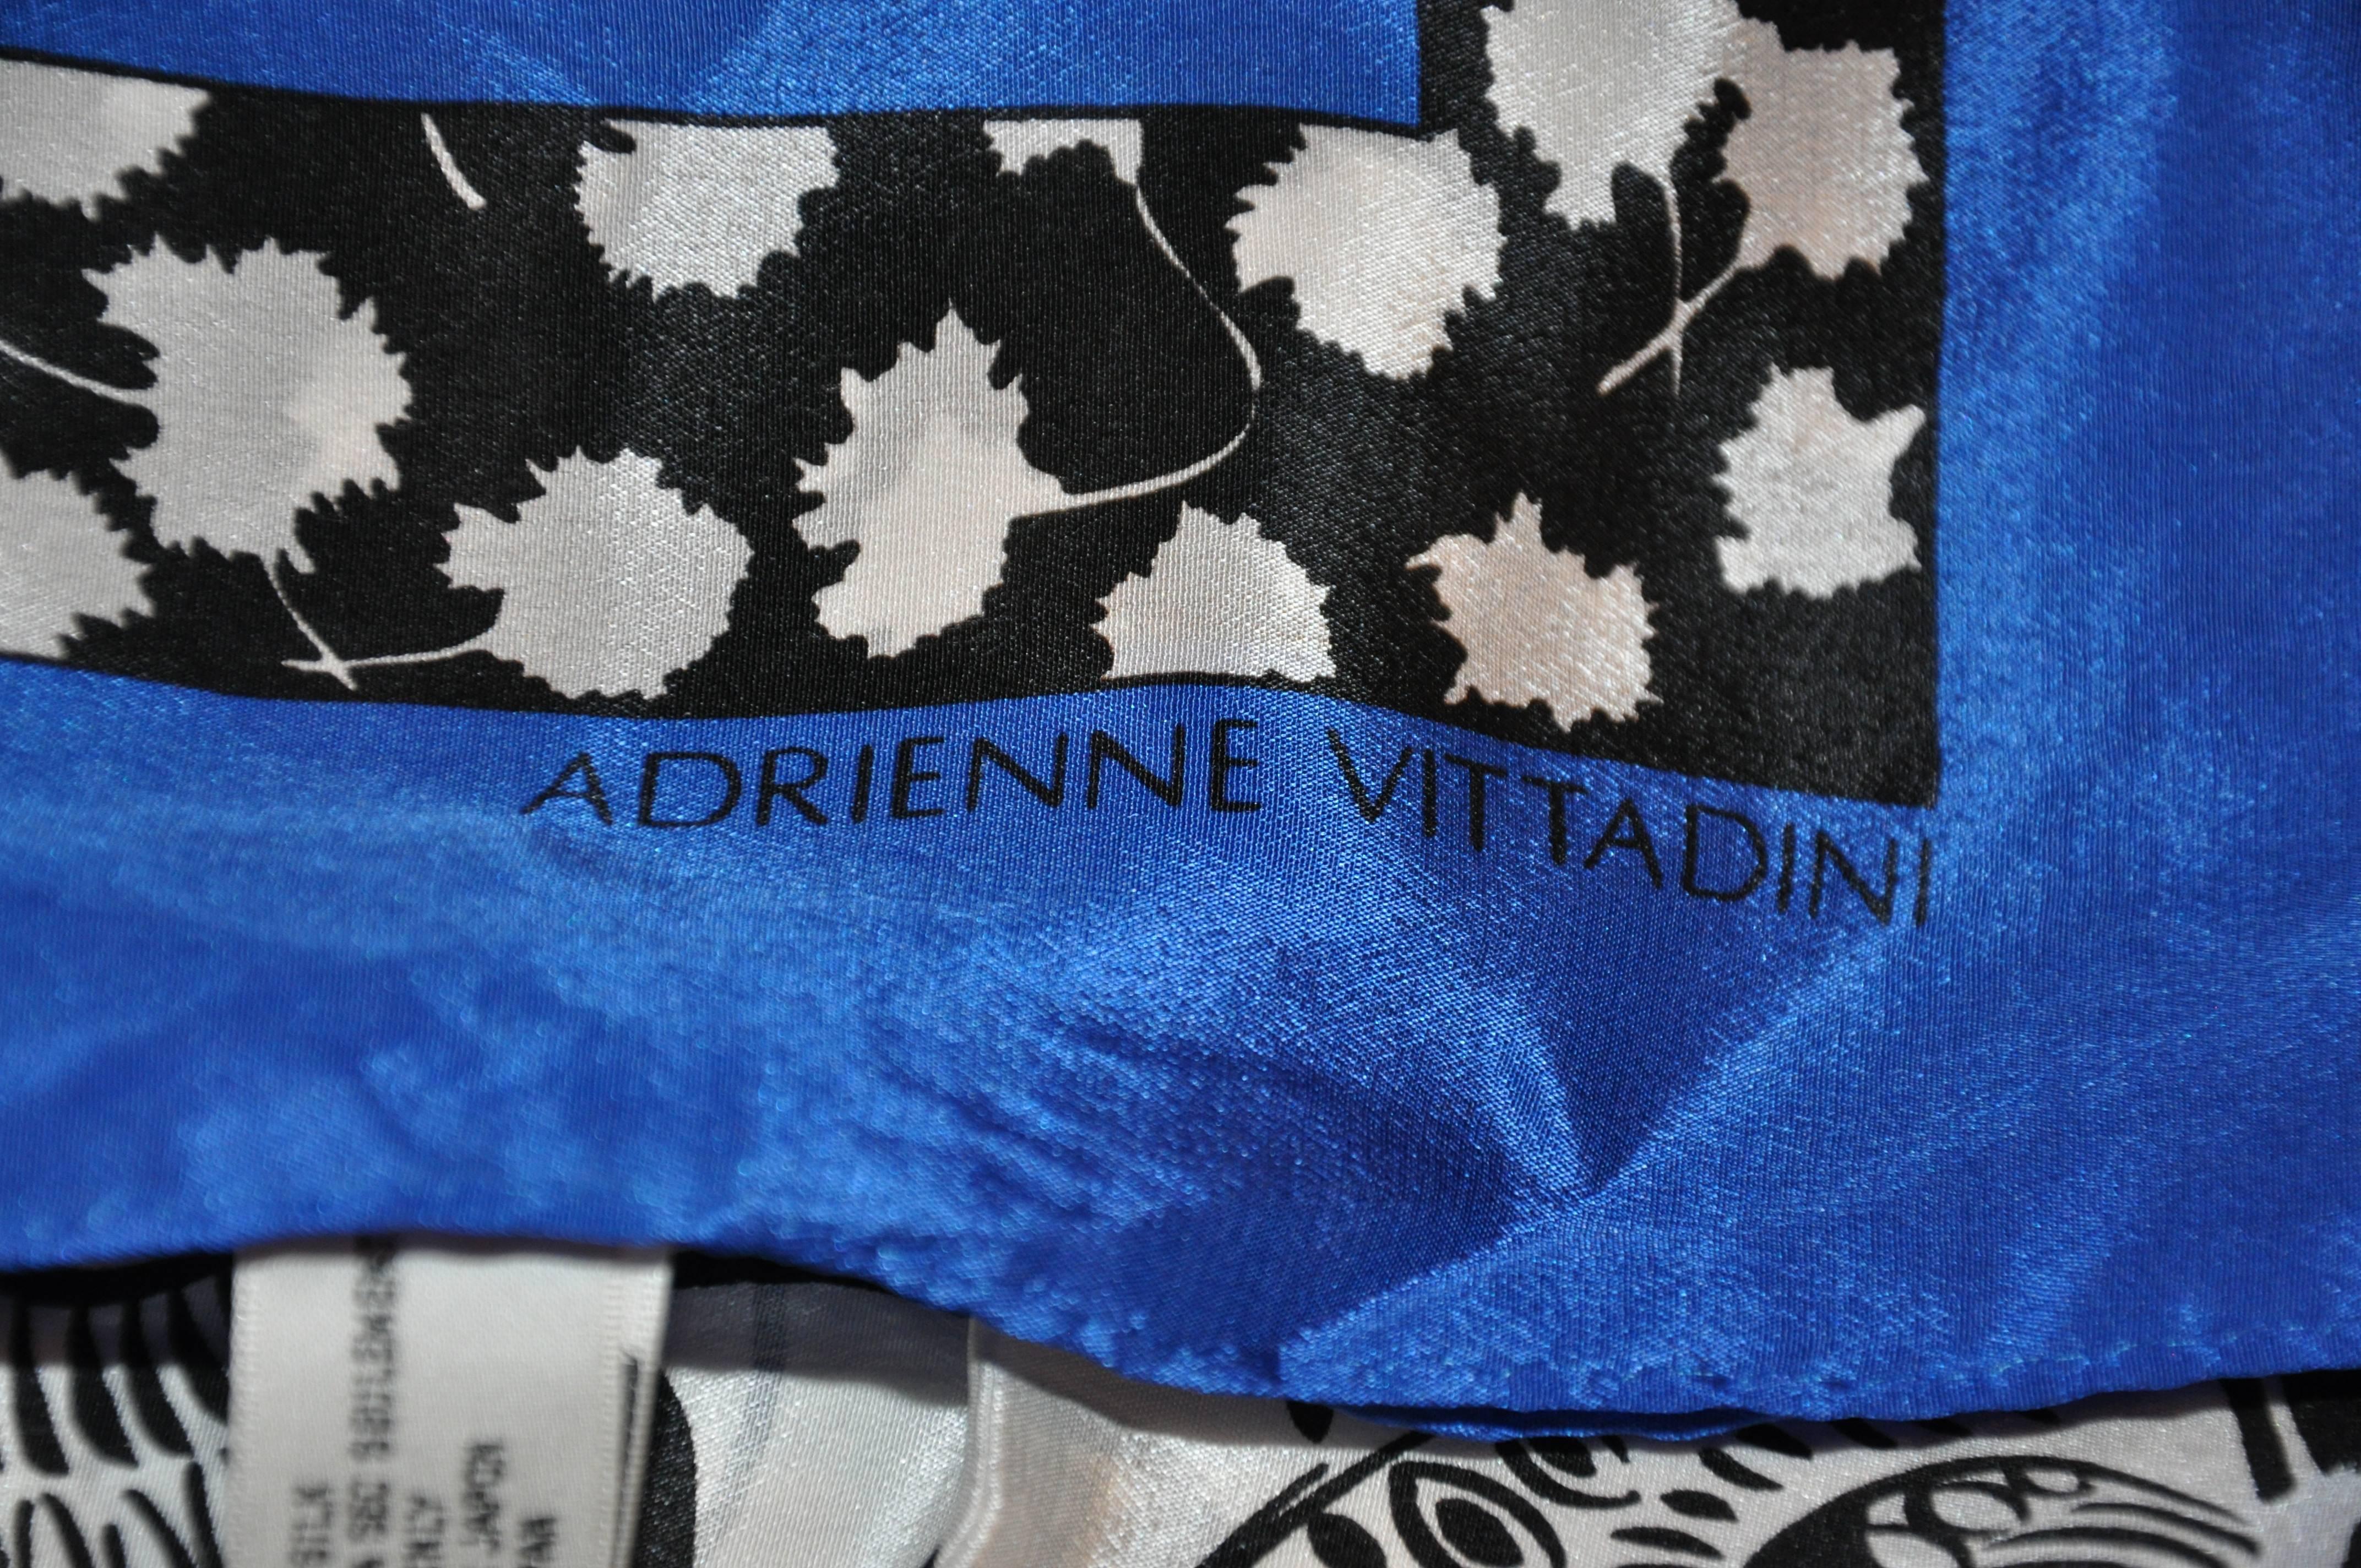        L'écharpe en soie Adrienne Vittadini, aux couleurs de la marine, du blanc et du noir, mesure 32